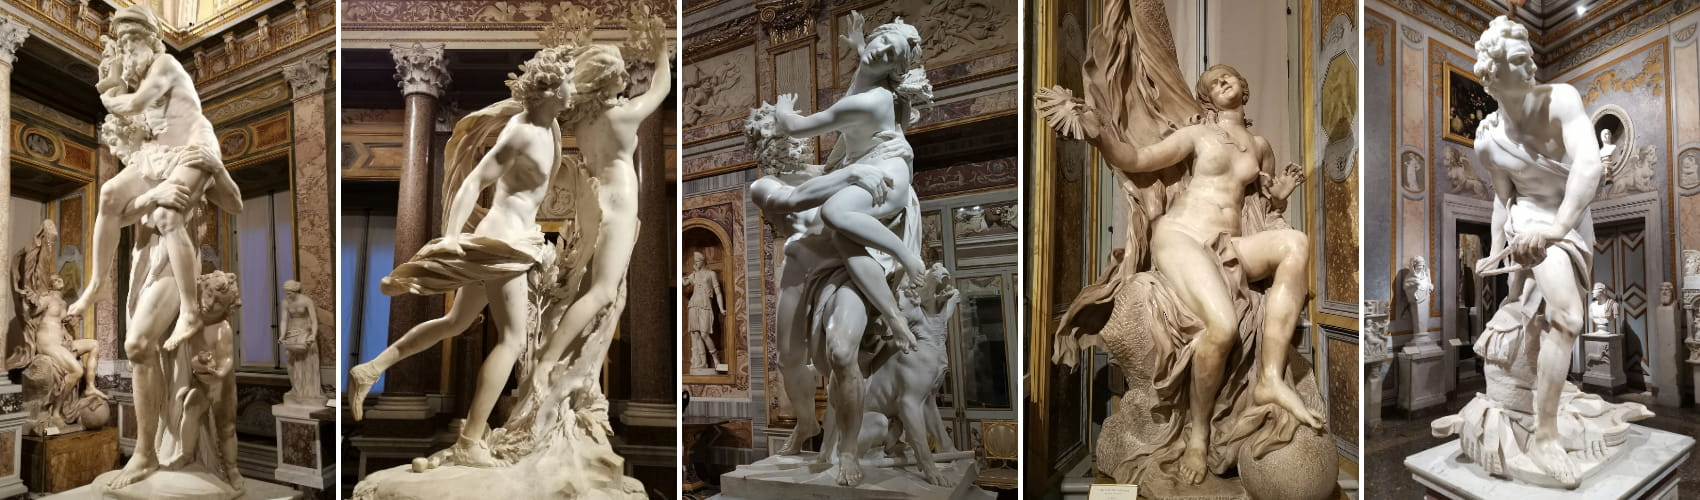 Gian Lorenzo Bernini alla Galleria Borghese